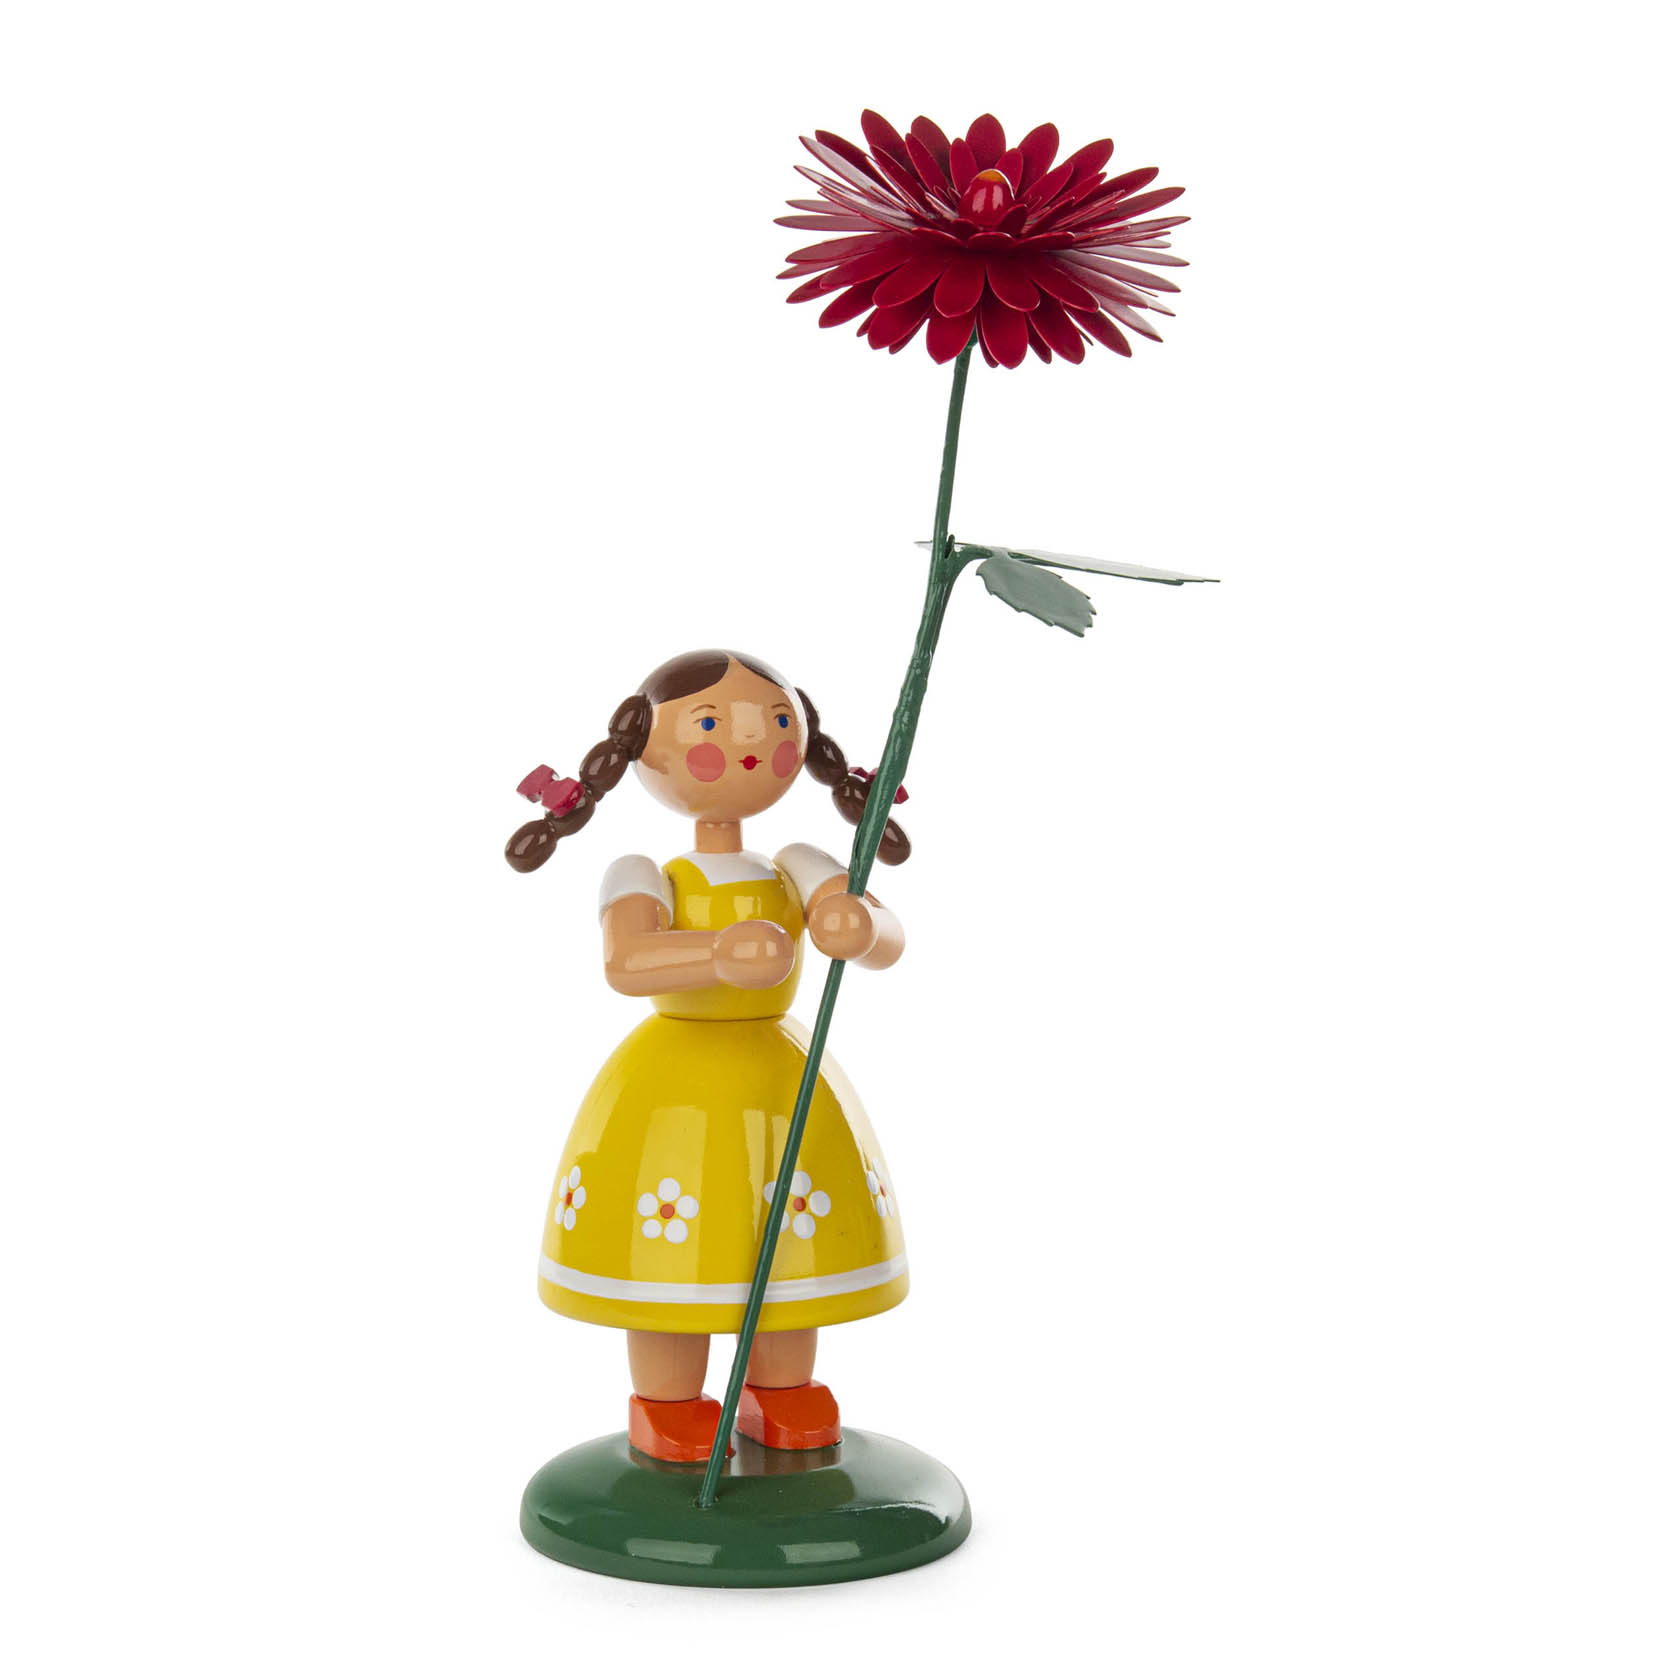 Blumenmädchen mit roter Dahlie 20cm im Dregeno Online Shop günstig kaufen